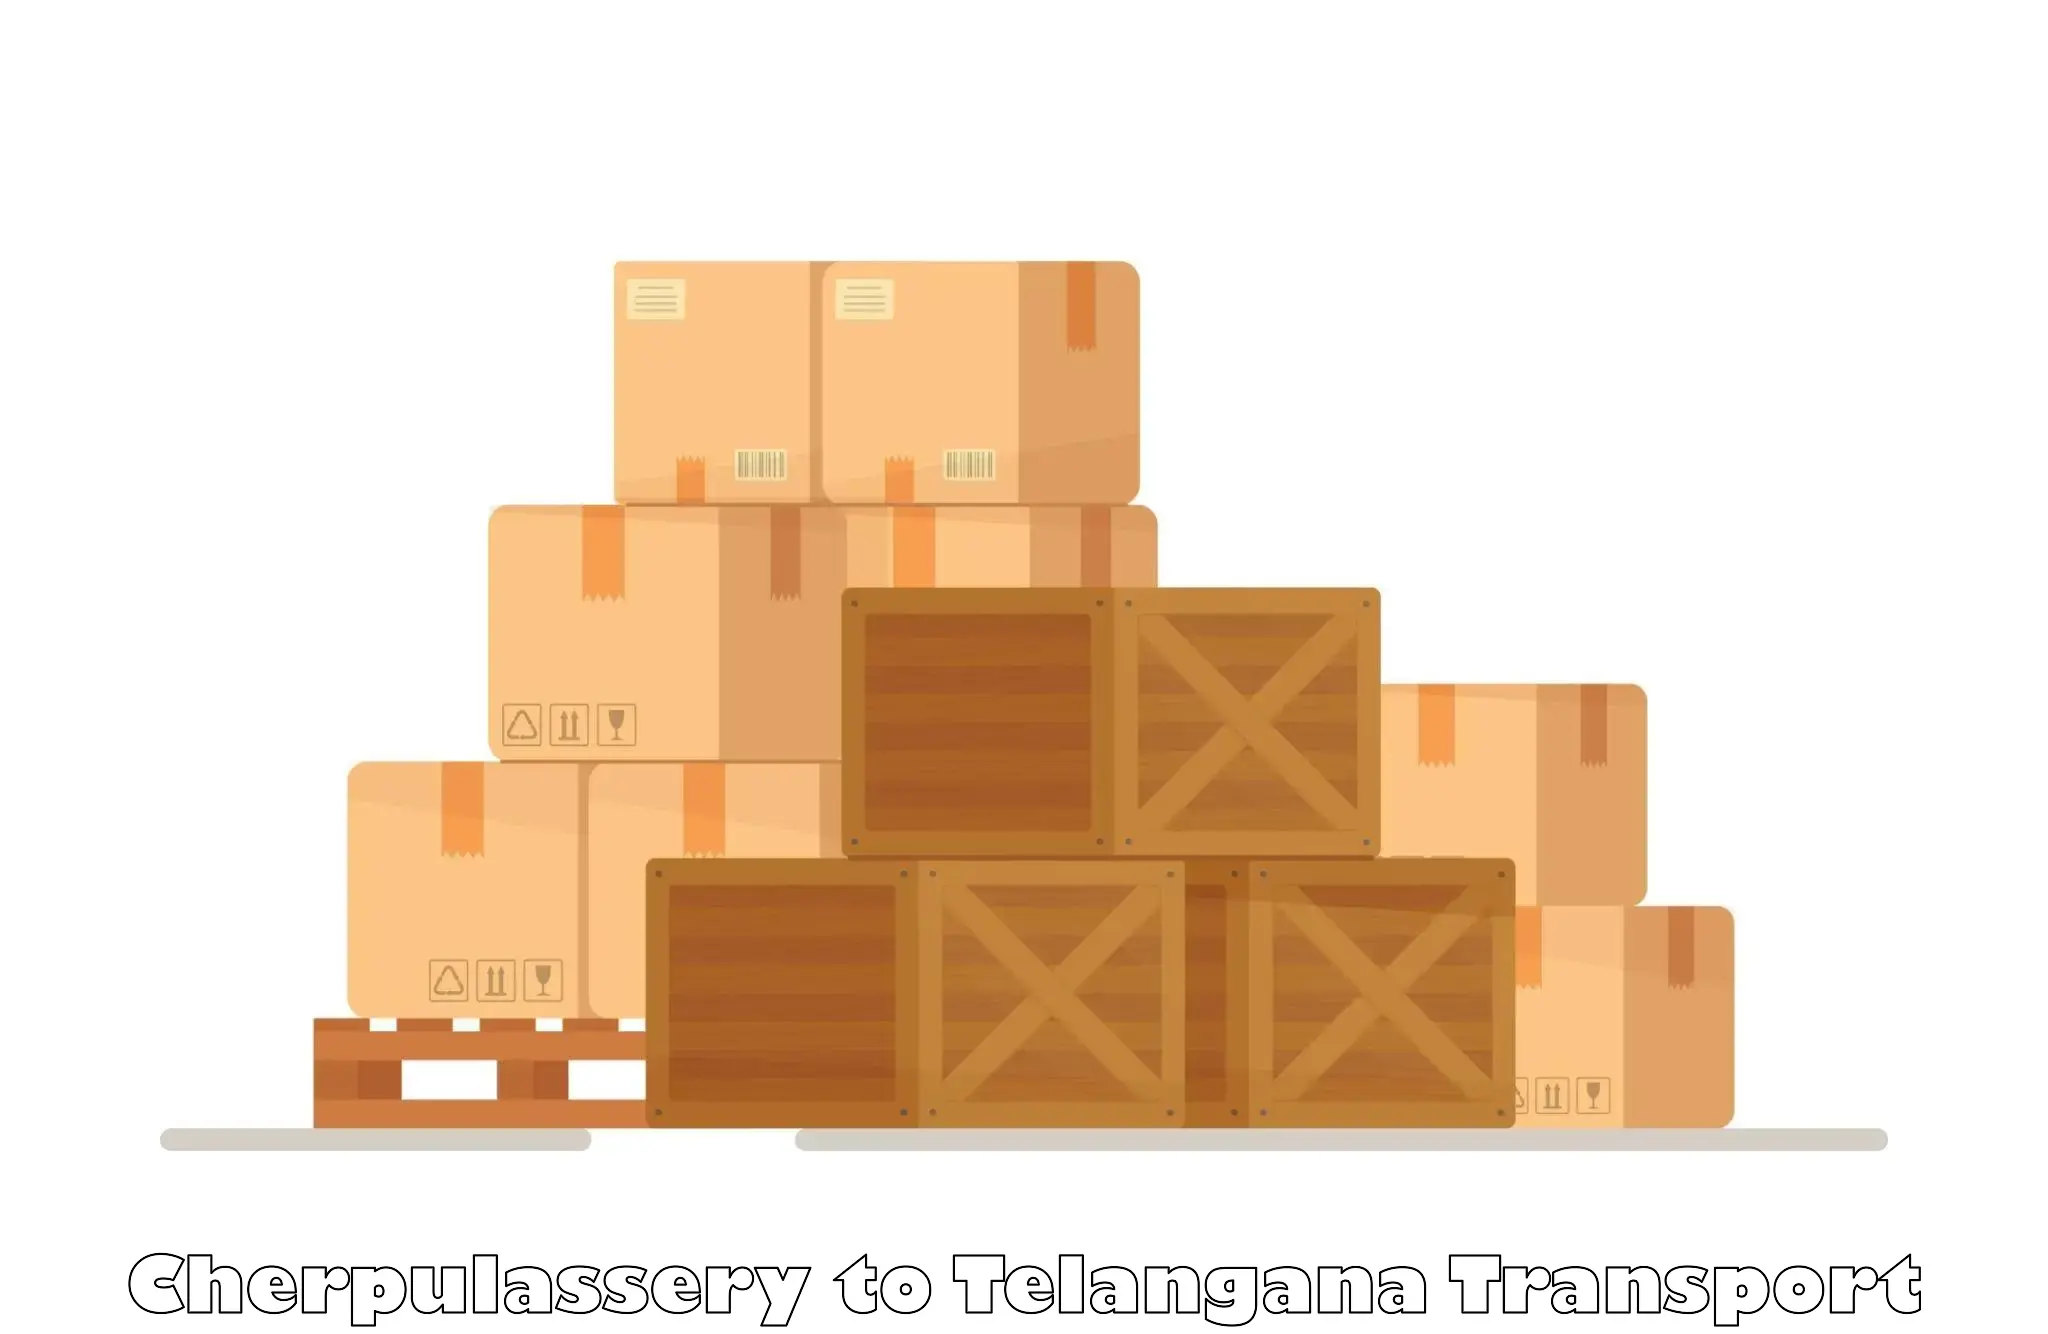 Intercity goods transport in Cherpulassery to Tandur